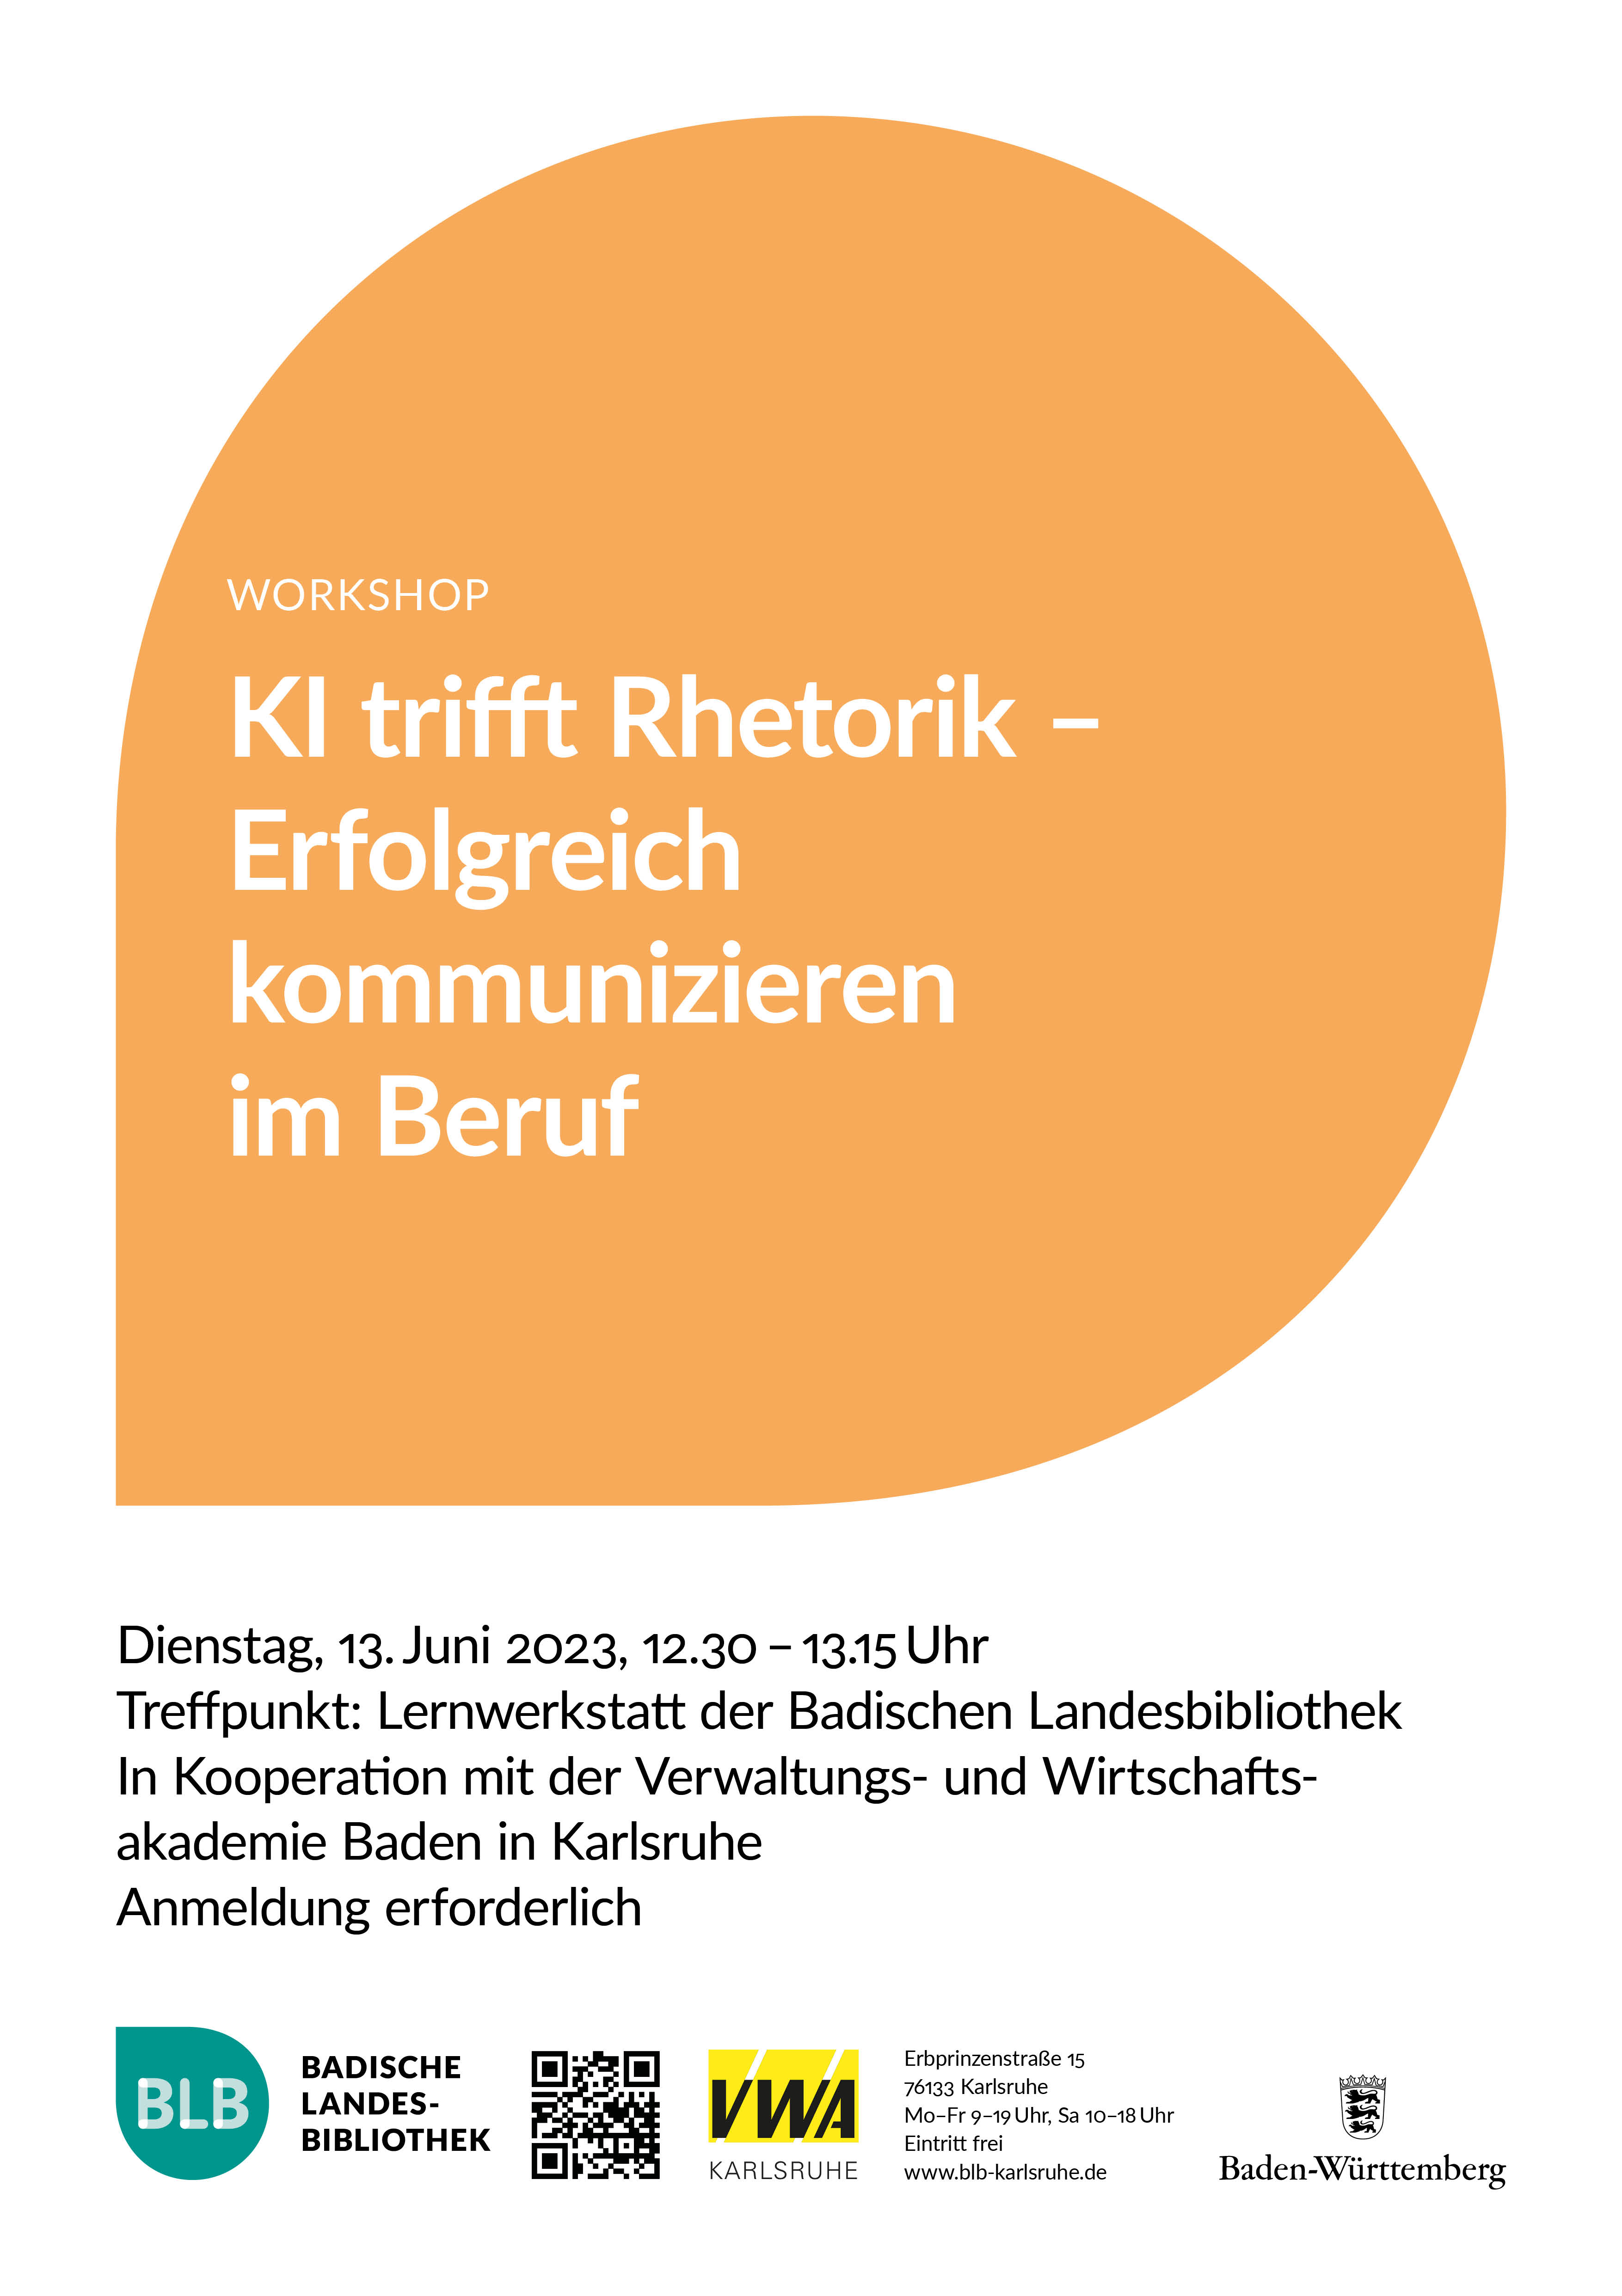 Zu sehen ist ein orangefarbenes Monogon mit der Aufschrift "KI trifft Rhetorik - Erfolgreich kommunizieren im Beruf." Der Workshop findet am Dienstag, dem 13. Juni 2023 von 12.30 - 13.15 Uhr in der Lernwerkstatt der Badischen Landesbibliothek statt.